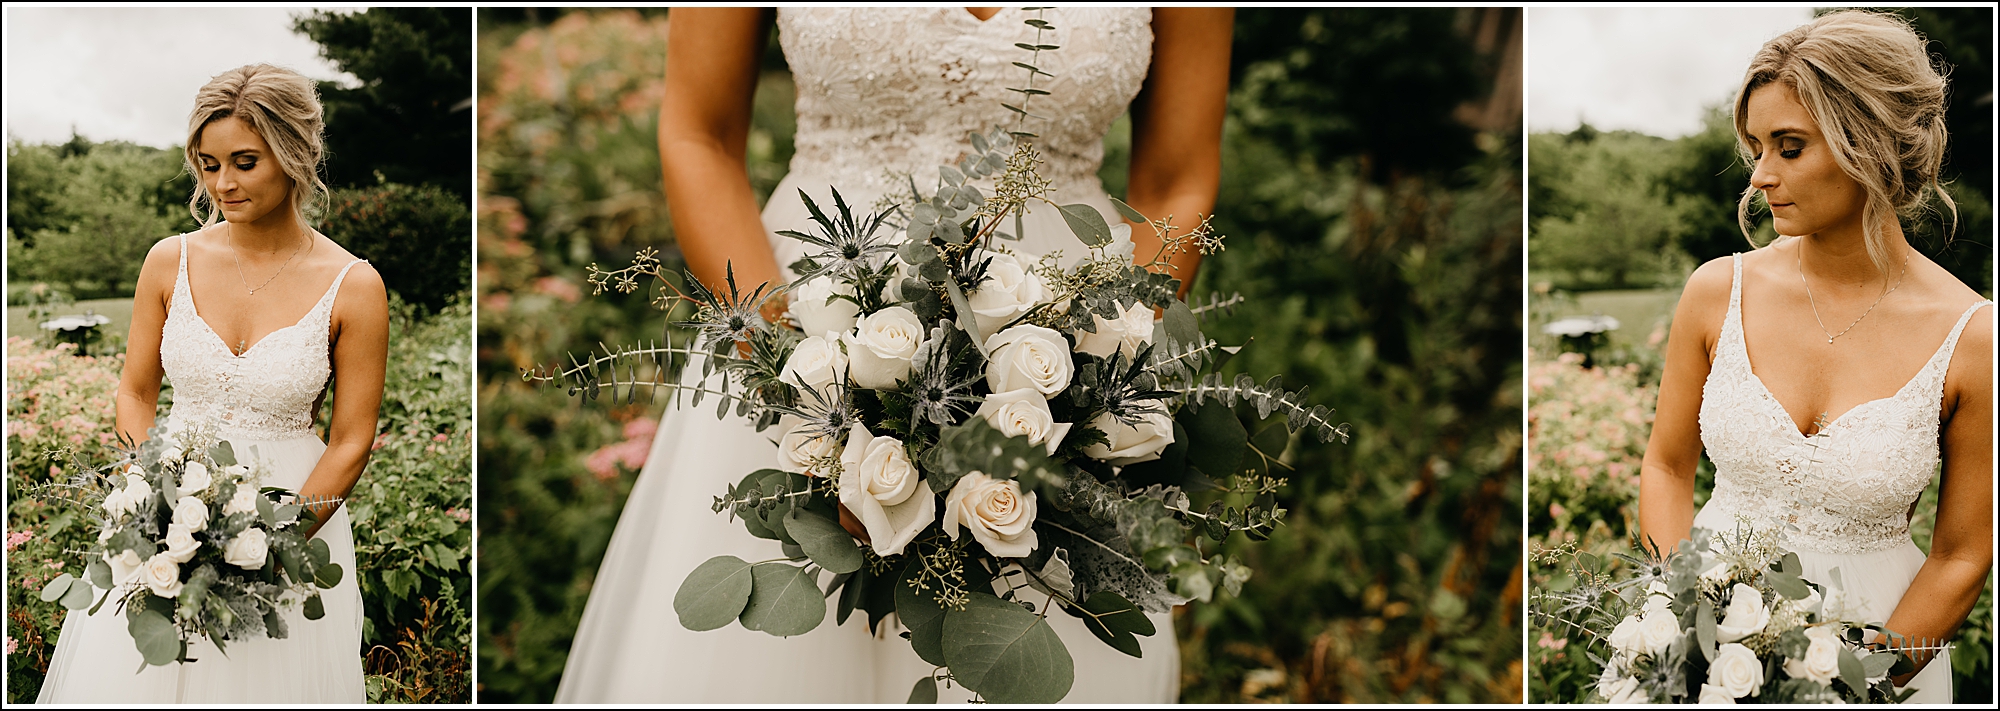 La Crosse, WI wedding photographer bridal portrait bouquet 